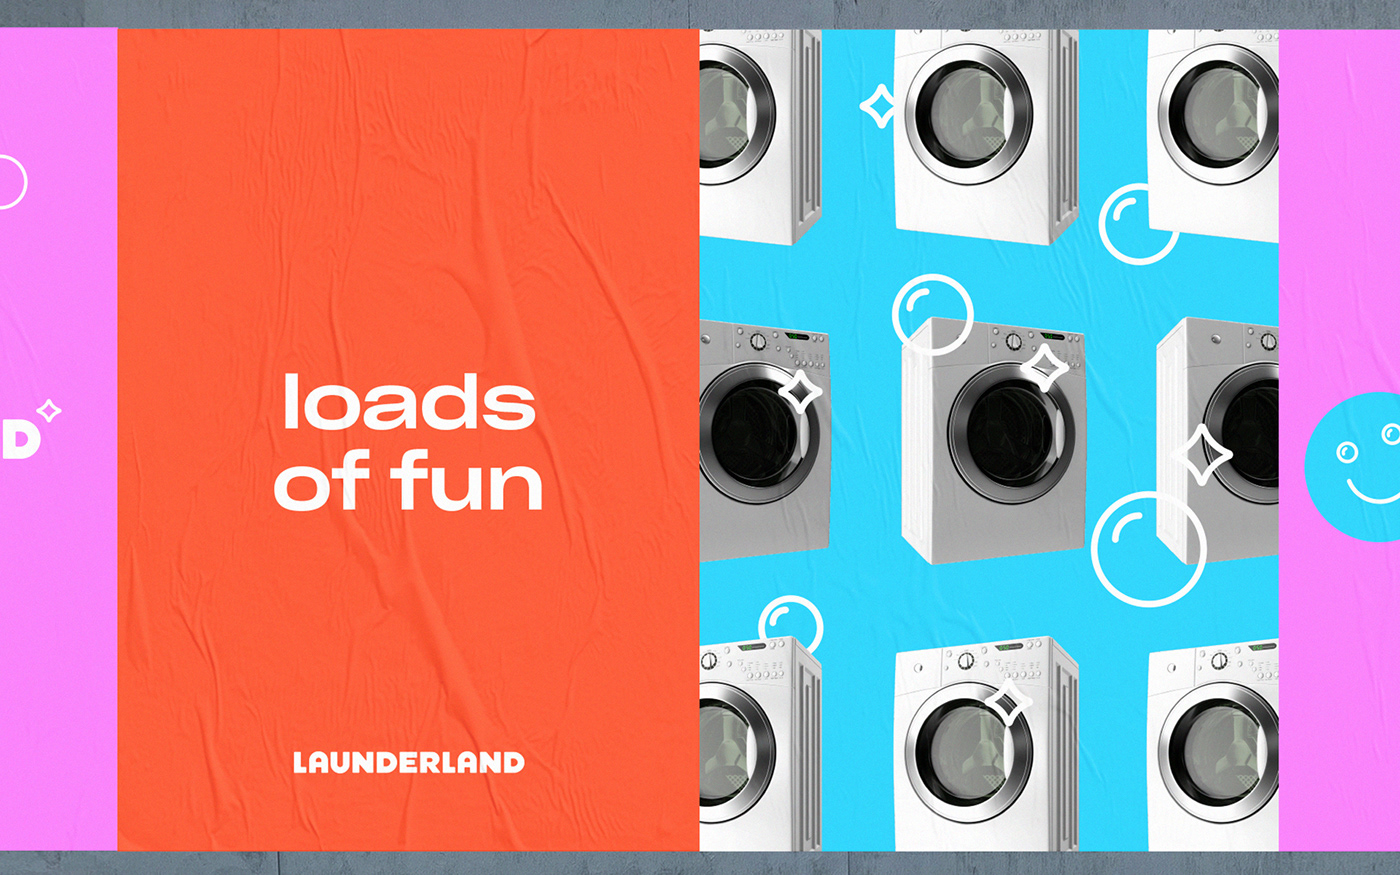 laundry laundromat wash detergent smile Washing machine spin launder land